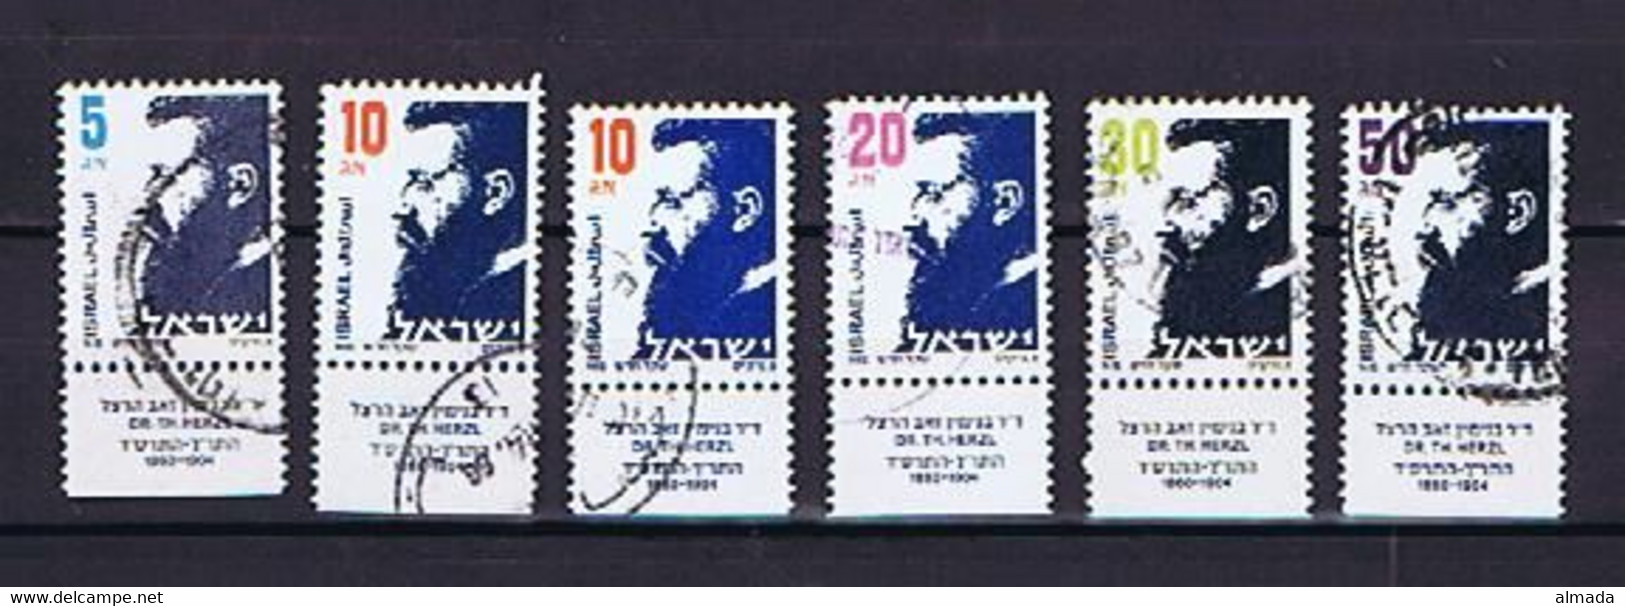 Israel 1986: Mi.-Nr. 1019-1023 Used / Gestempelt With TABs (see Description) - Usados (con Tab)